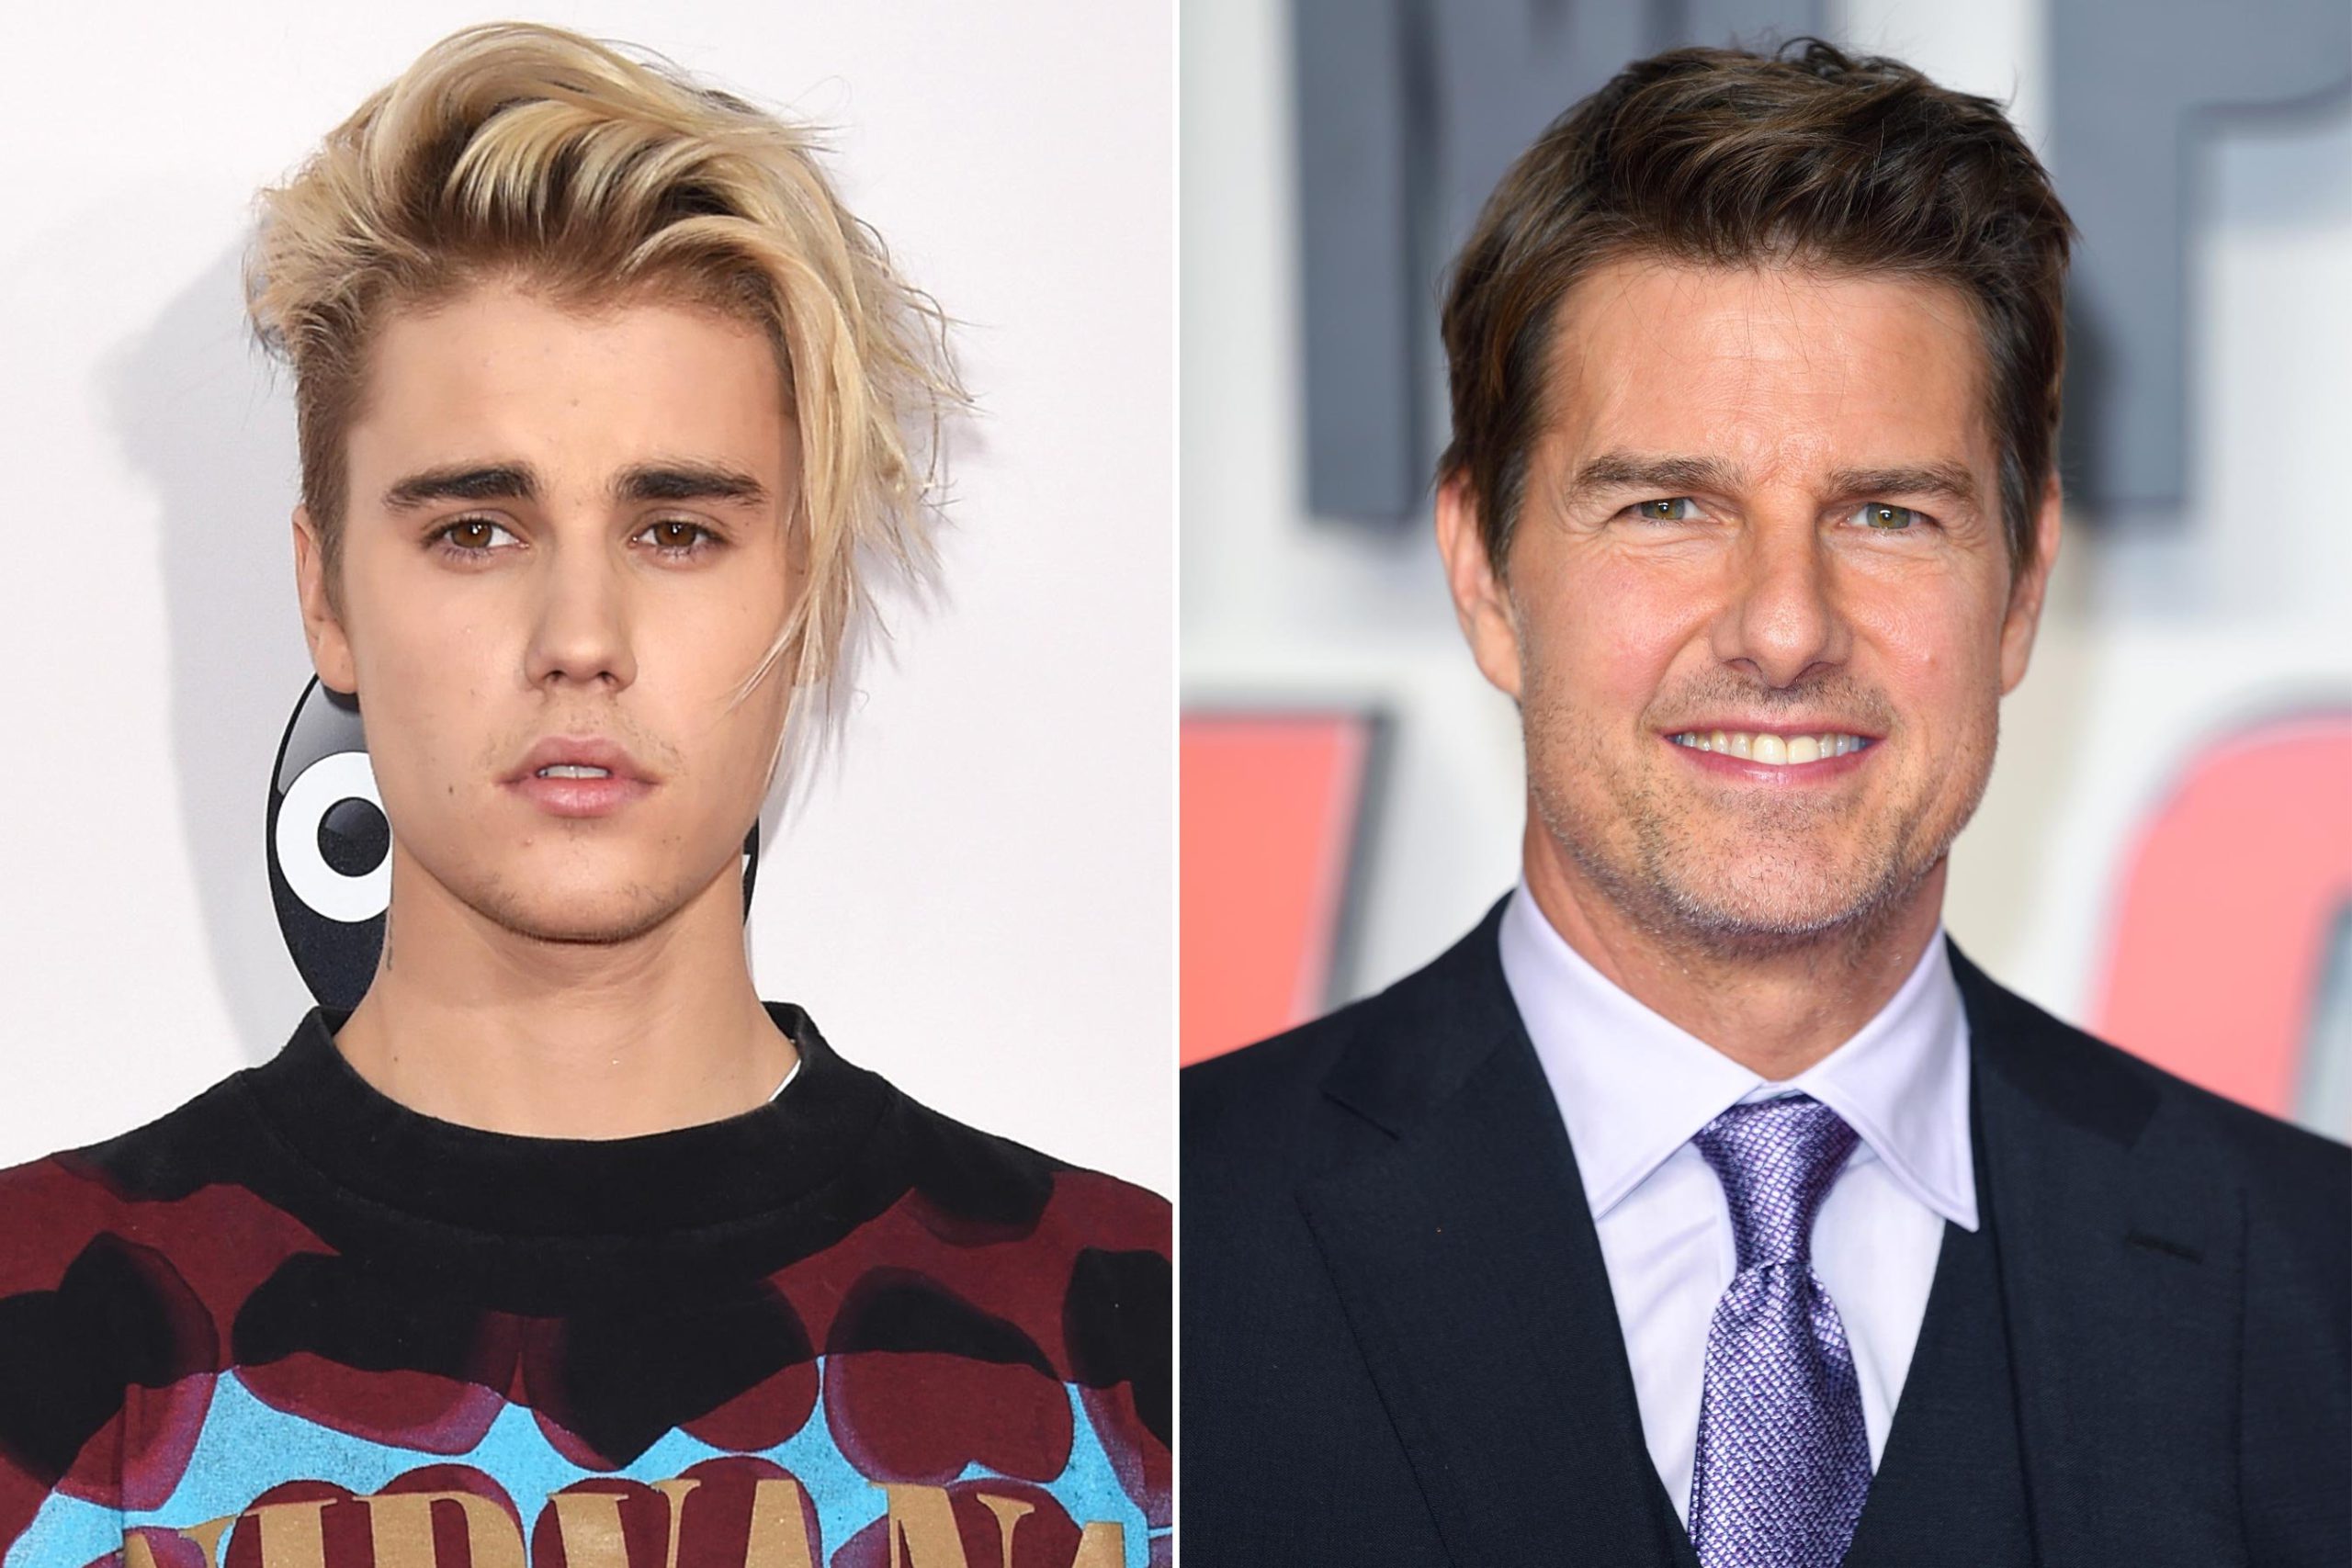  Justin Bieber îl provoacă din nou la bătaie pe Tom Cruise